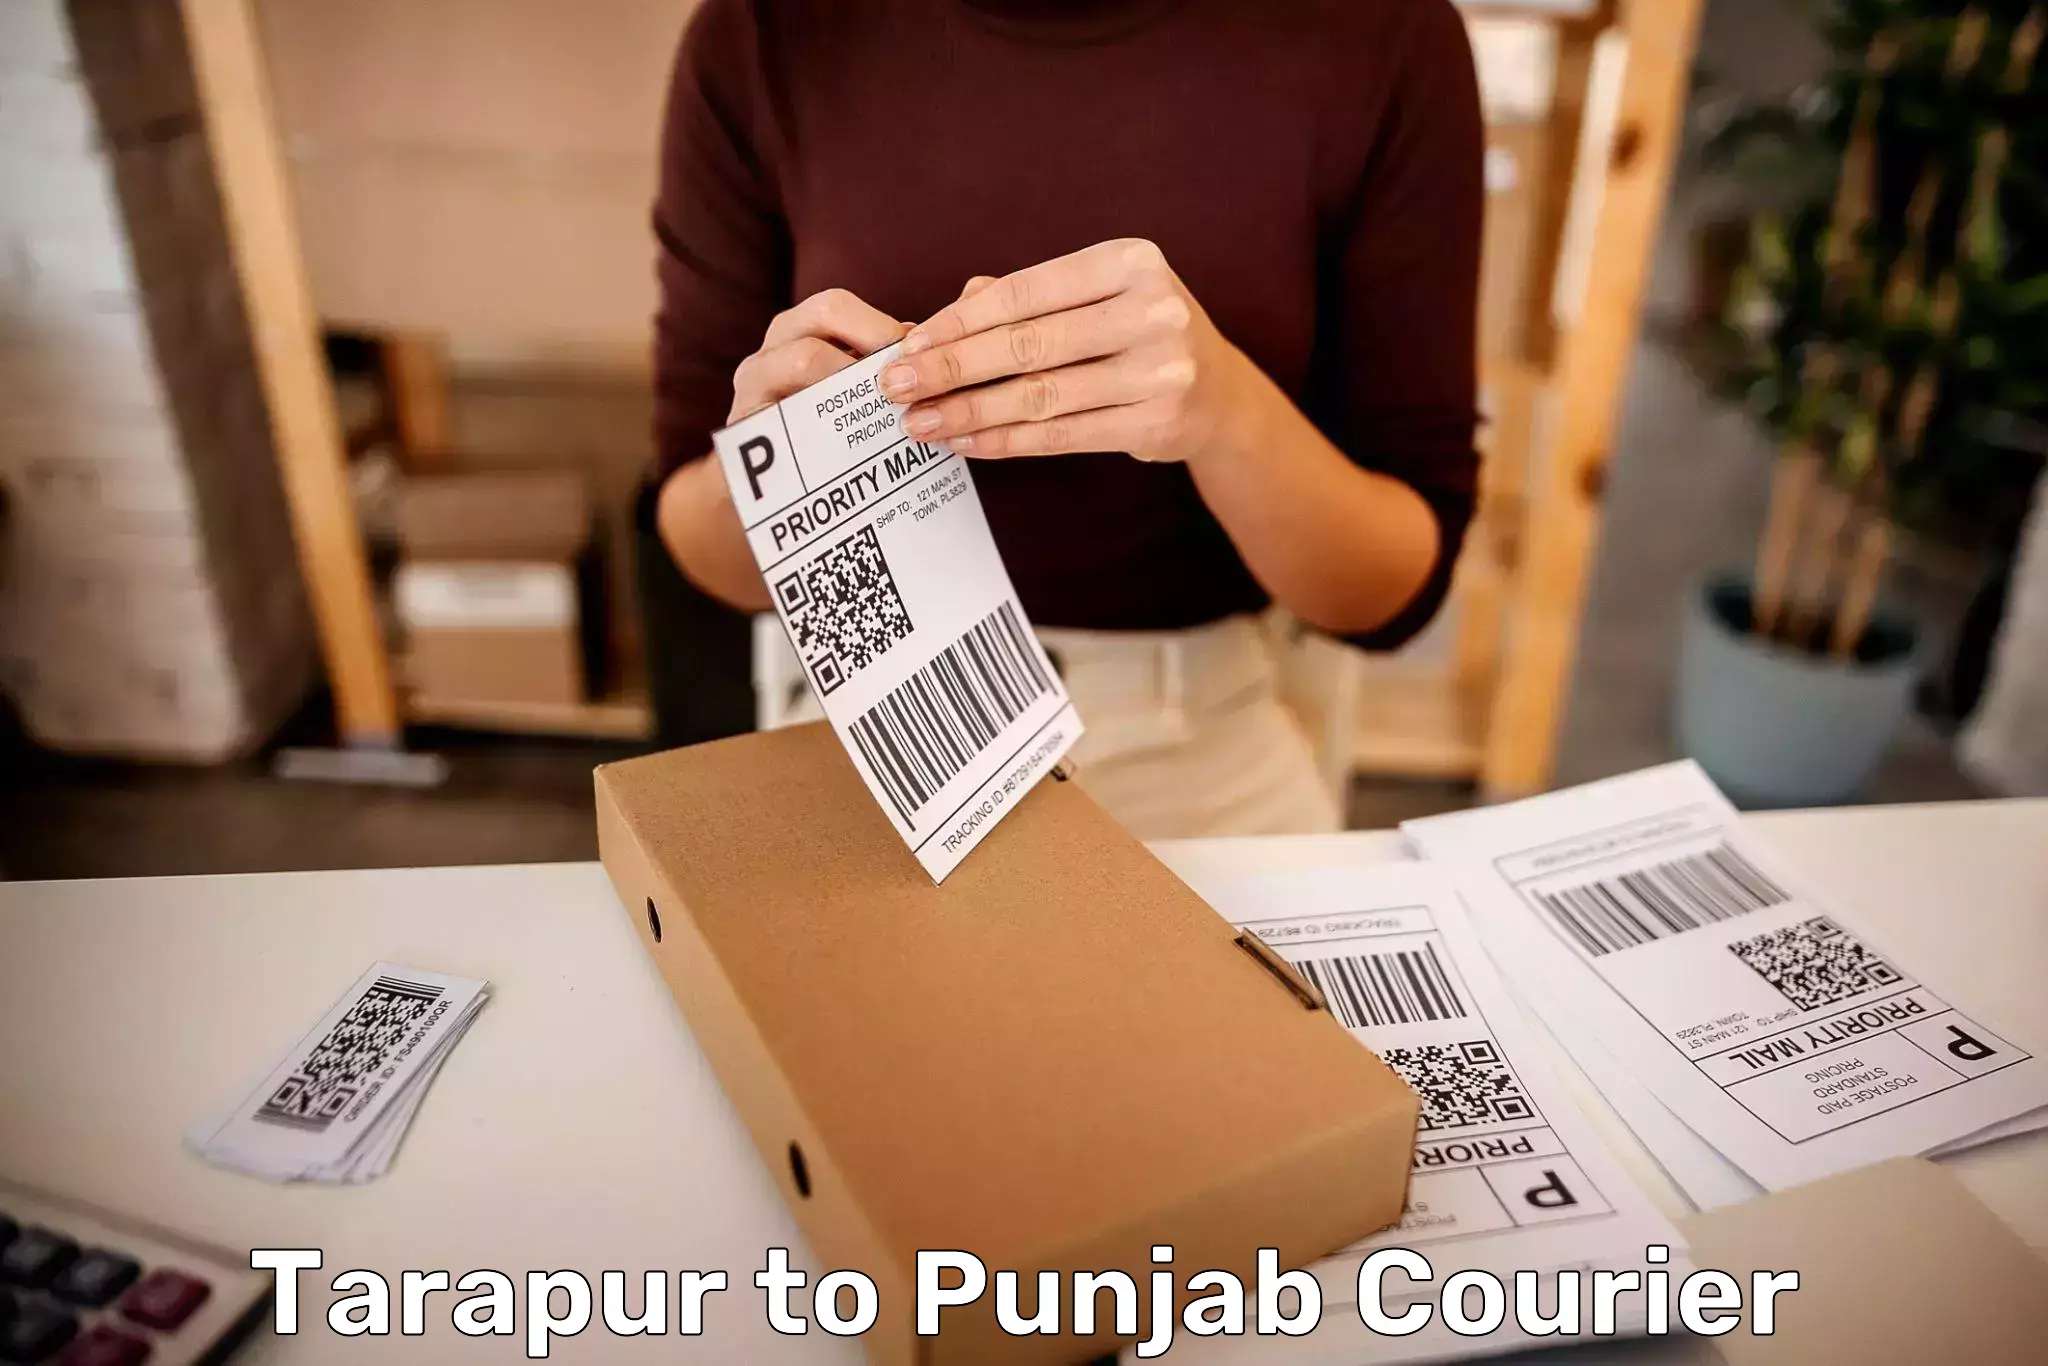 Door-to-door baggage service Tarapur to Punjab